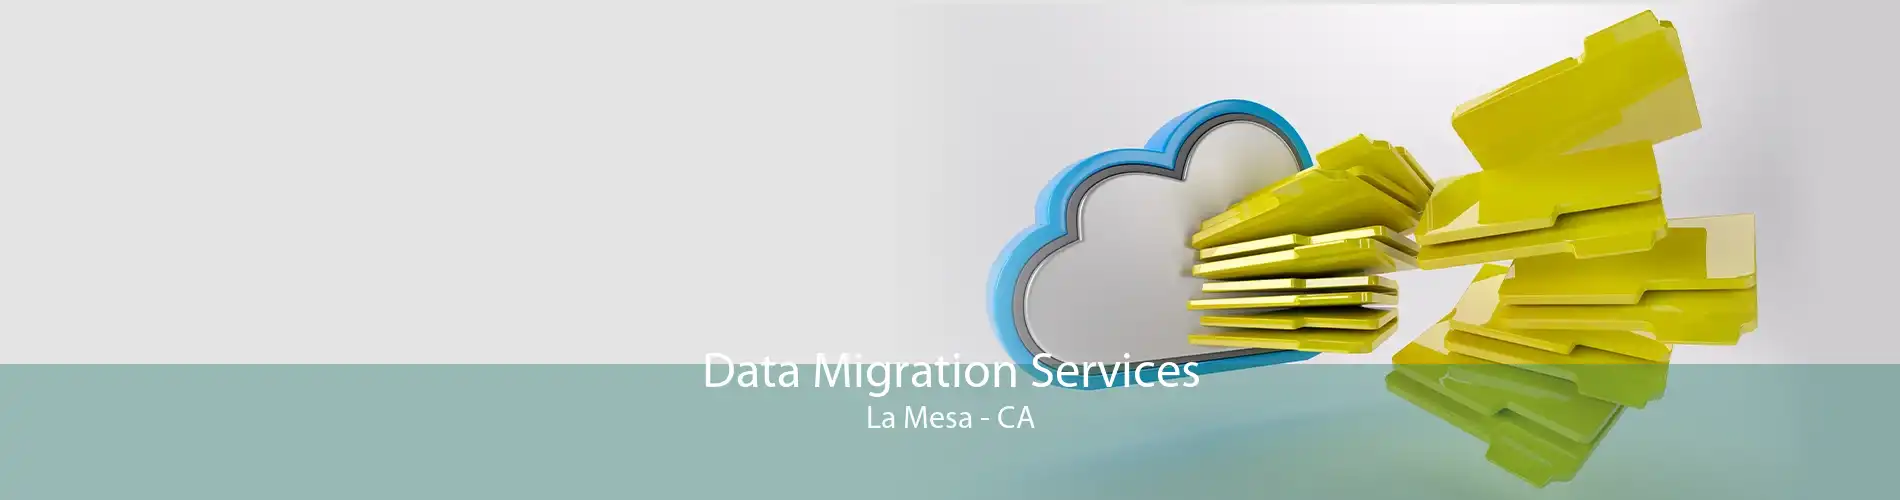 Data Migration Services La Mesa - CA